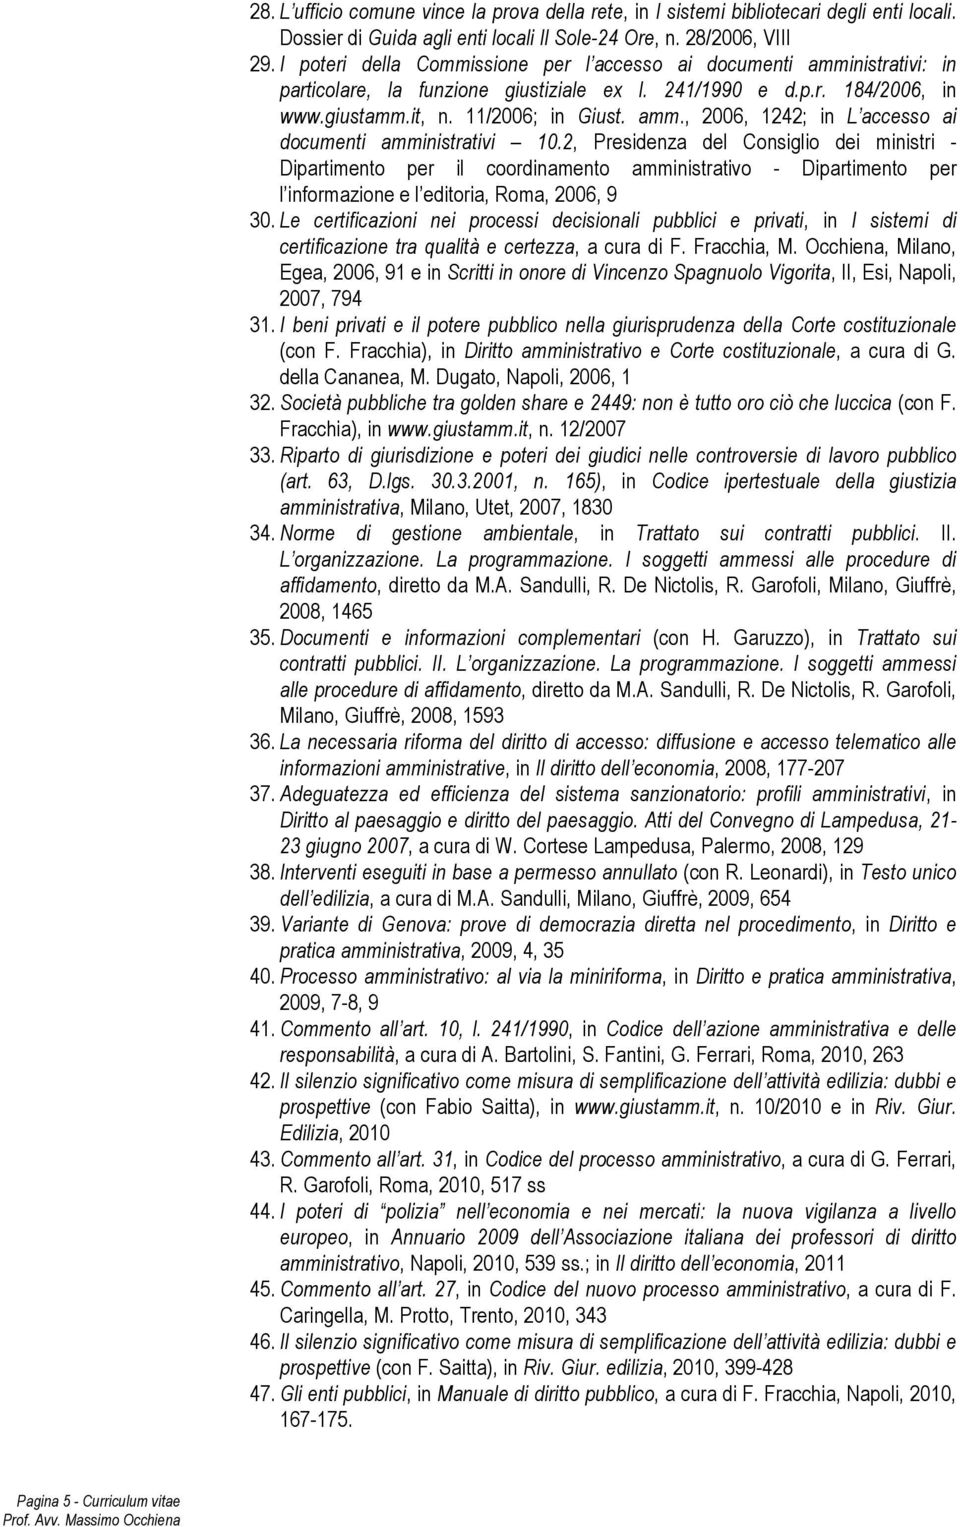 2, Presidenza del Consiglio dei ministri - Dipartimento per il coordinamento amministrativo - Dipartimento per l informazione e l editoria, Roma, 2006, 9 30.